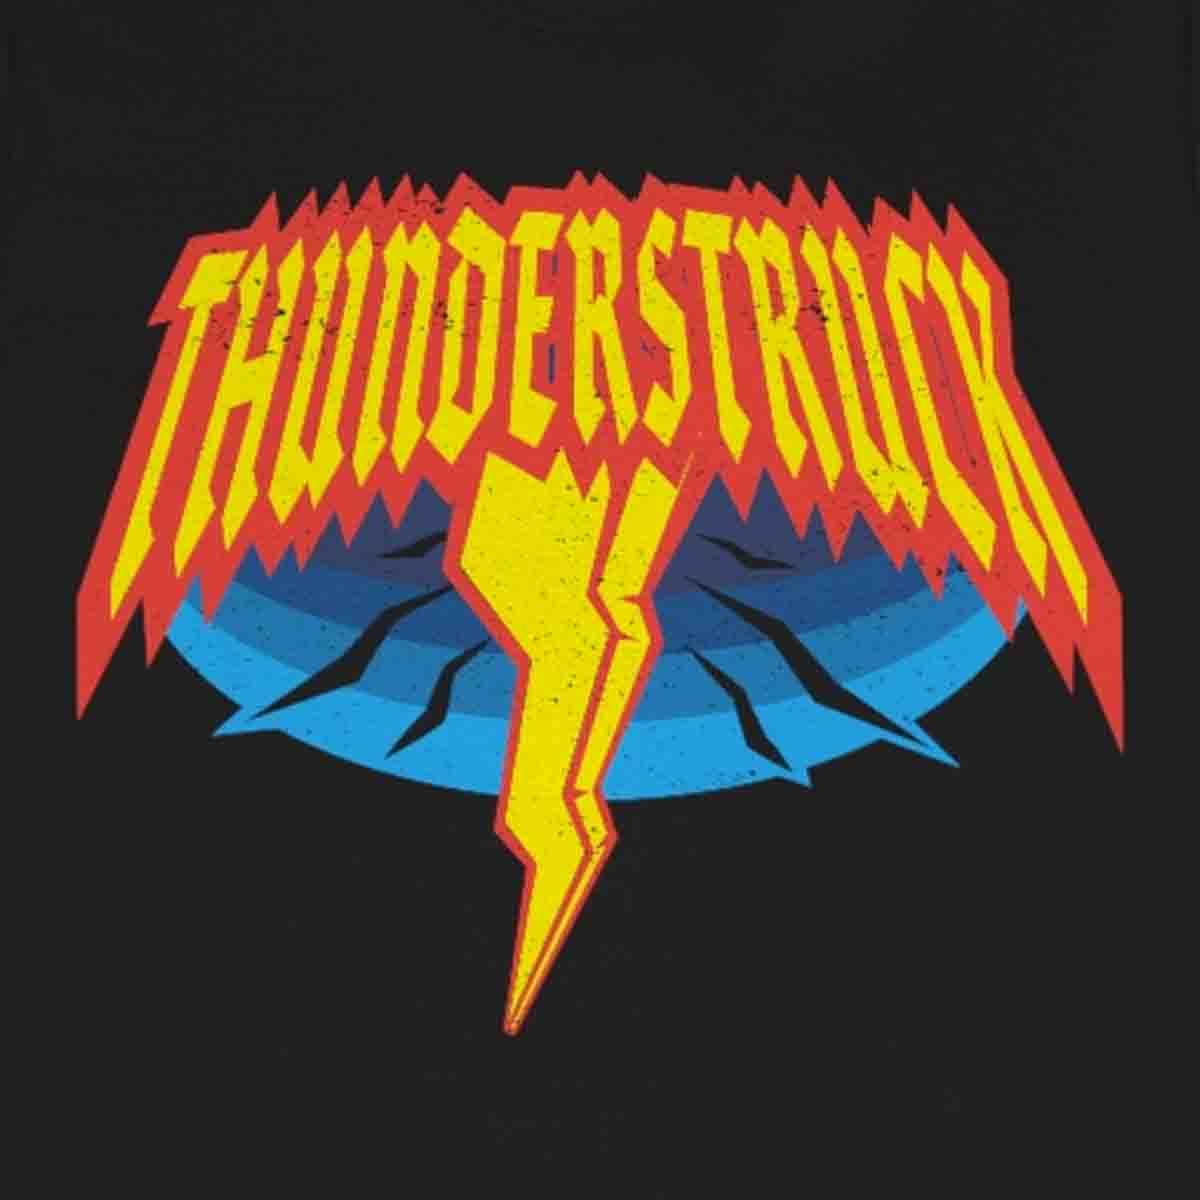 Thunderstruck Premium T-Shirt, Lightning Surprise, Life Happens